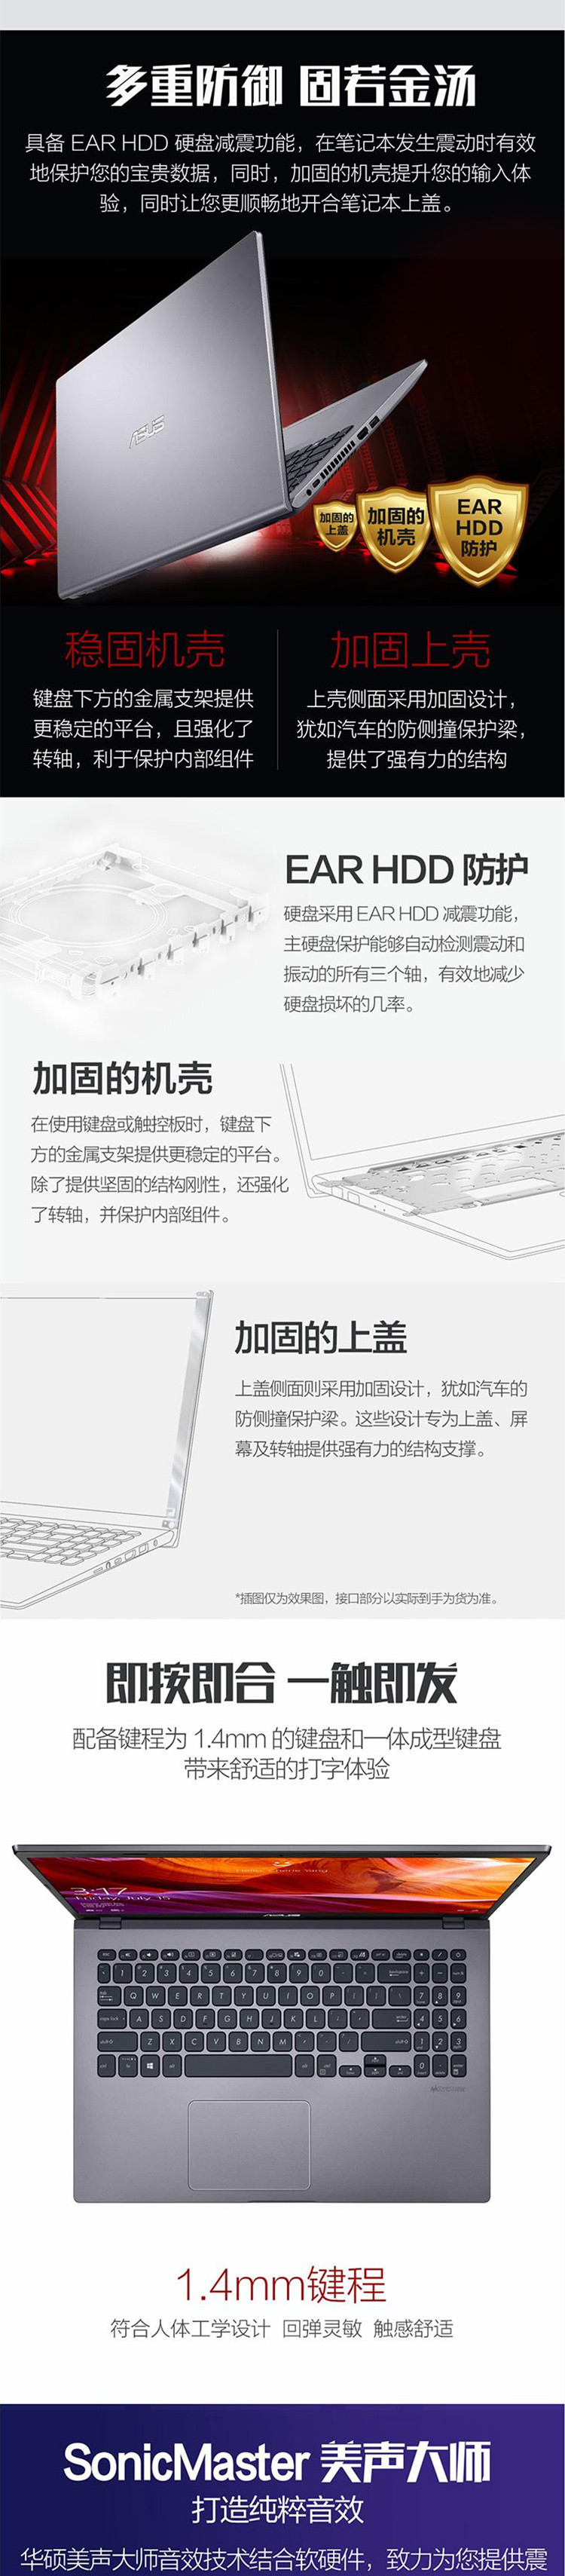 华硕/ASUS FL8700FJ8565 15.6英寸I7笔记本 256固态硬盘 4G内存 2G独显